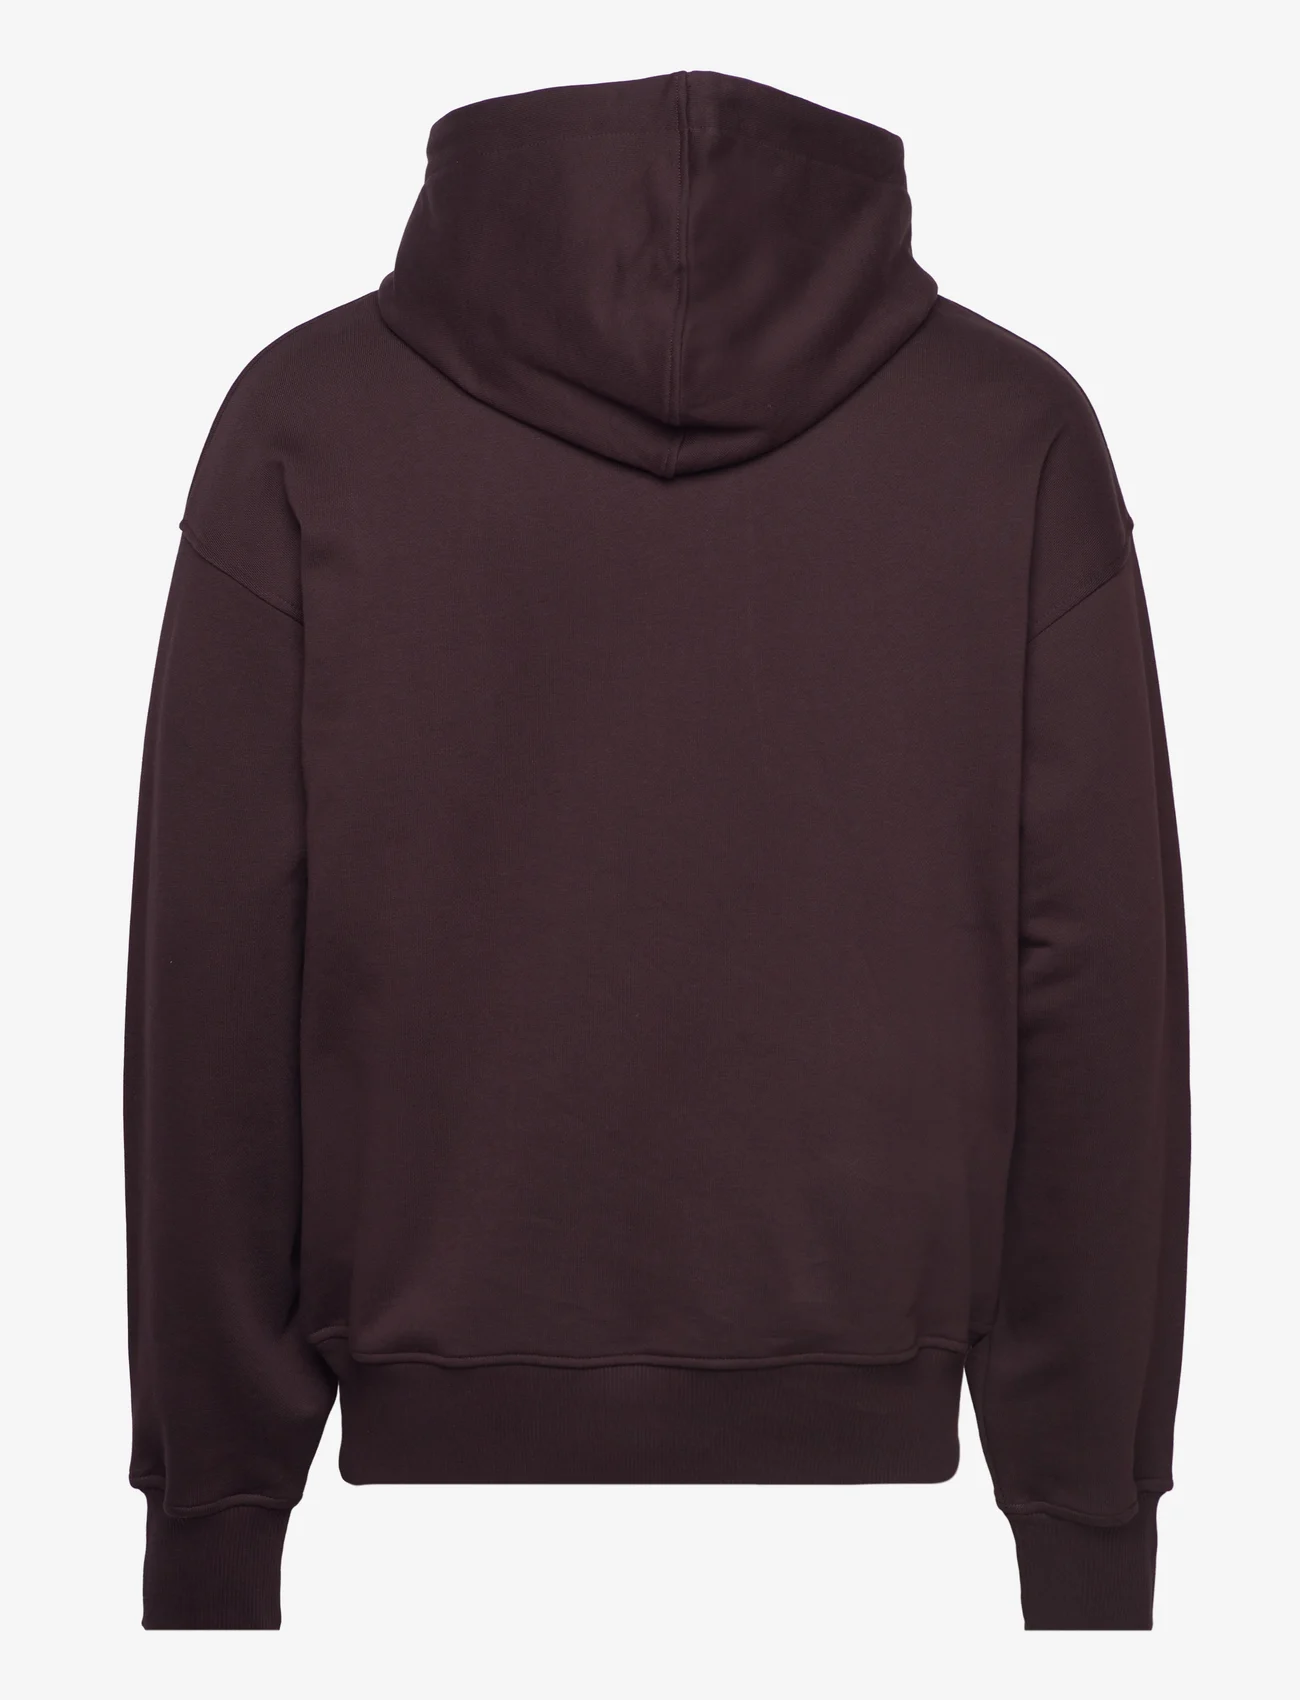 Daily Paper - elevin hoodie - hoodies - syrup brown - 1